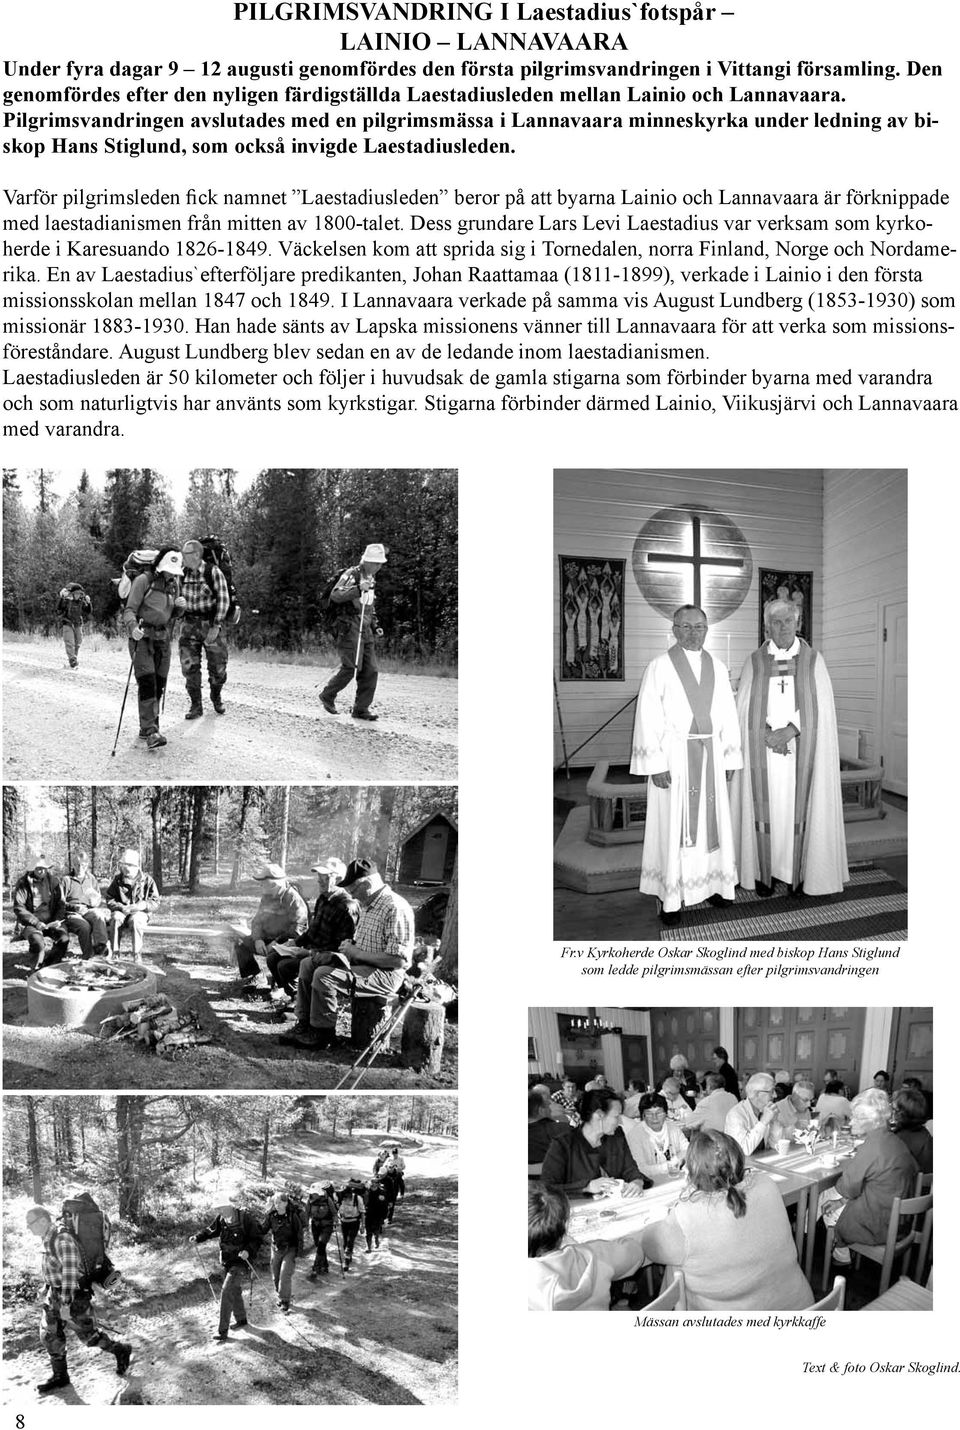 Pilgrimsvandringen avslutades med en pilgrimsmässa i Lannavaara minneskyrka under ledning av biskop Hans Stiglund, som också invigde Laestadiusleden.